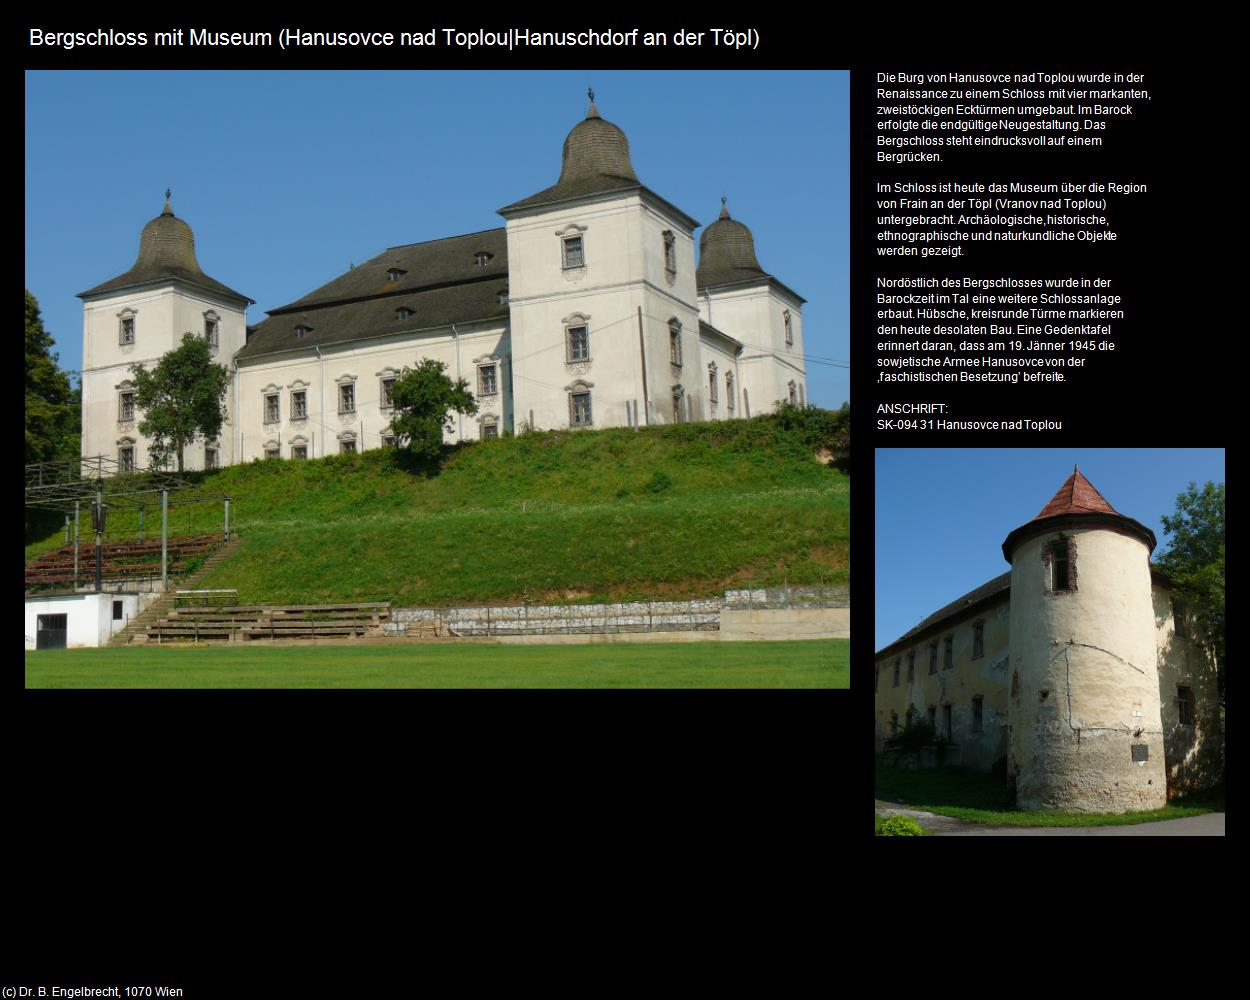 Bergschloss mit Museum (Hanusovce nad Toplou|Hanuschdorf an der Töpl) in SLOWAKEI